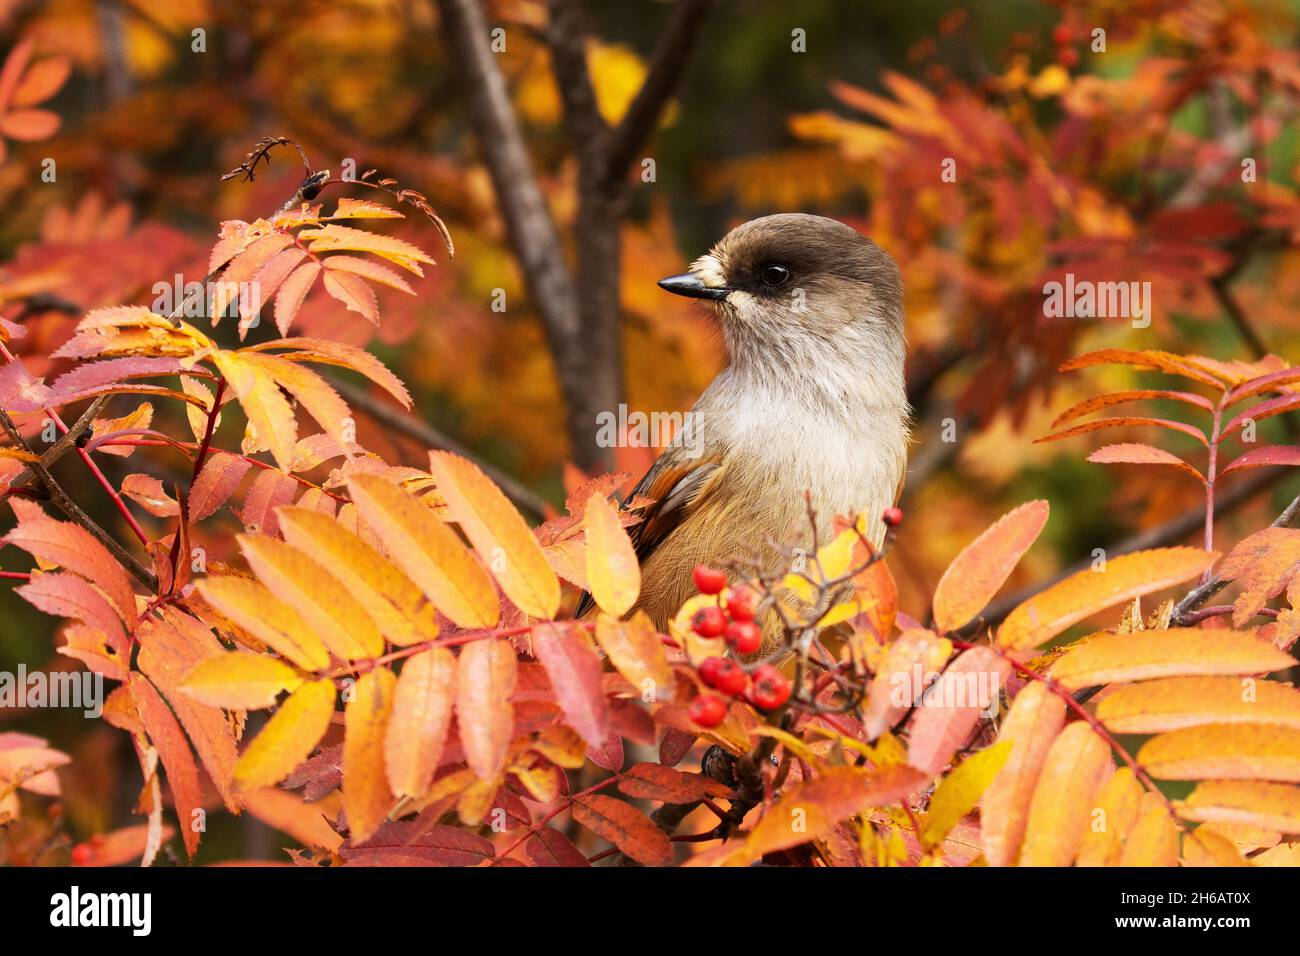 Magnifique oiseau taïga geai sibérien, Perisoreus infaustus au milieu des feuilles de Rowan colorées pendant le feuillage d'automne près de Kuusamo, Finlande Banque D'Images